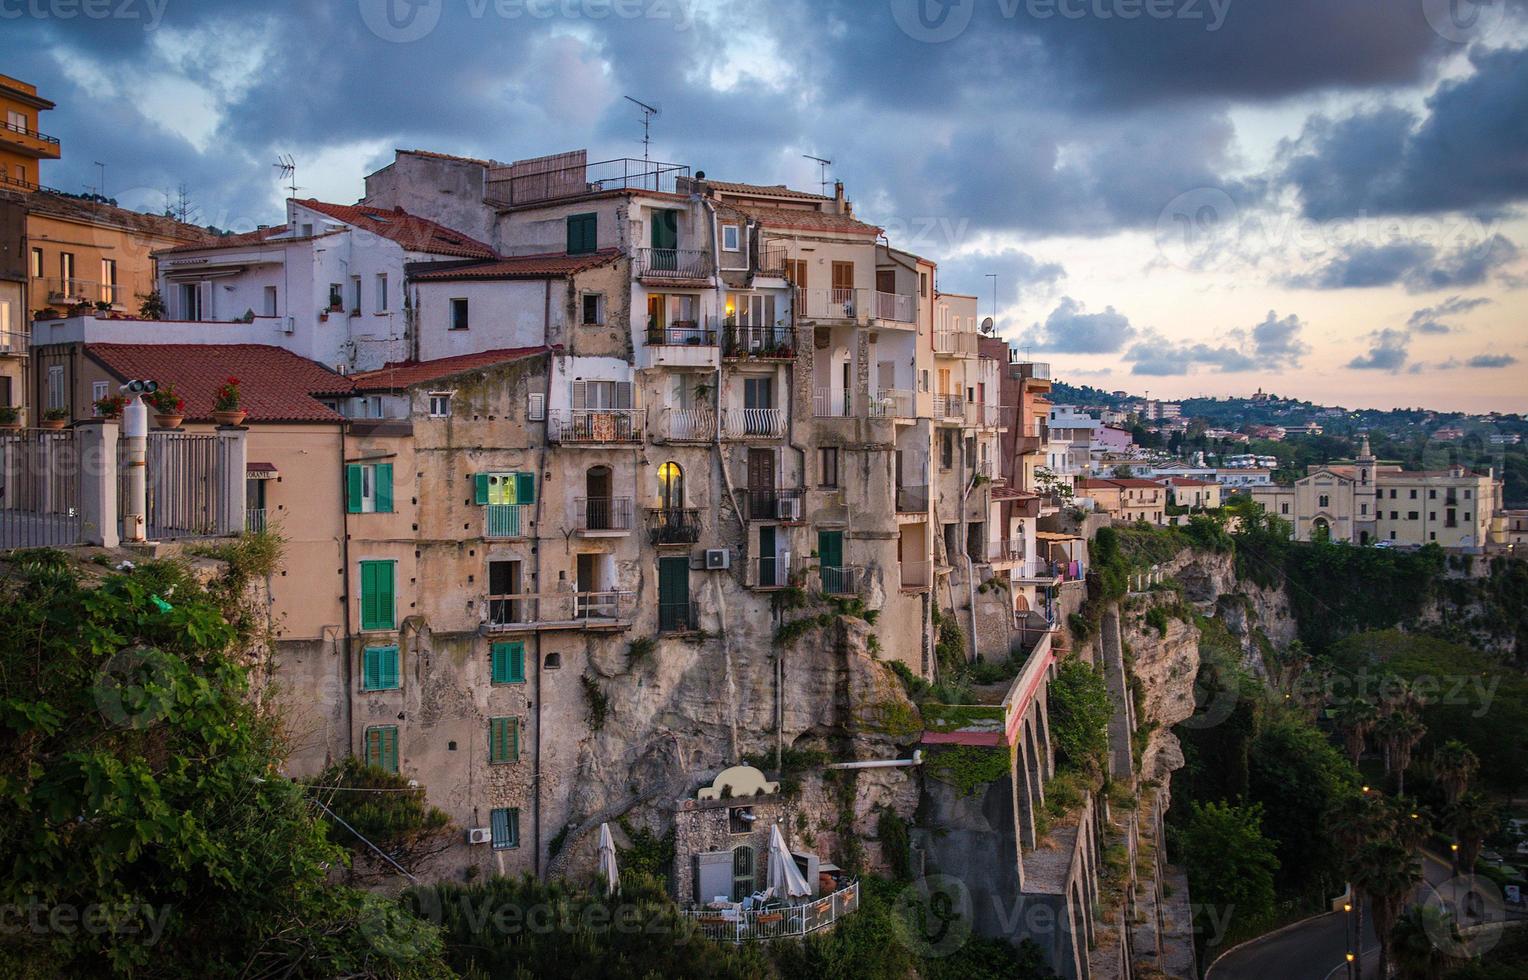 Bâtiments en pierre colorés de la ville de tropea au sommet d'une falaise, calabre, italie photo